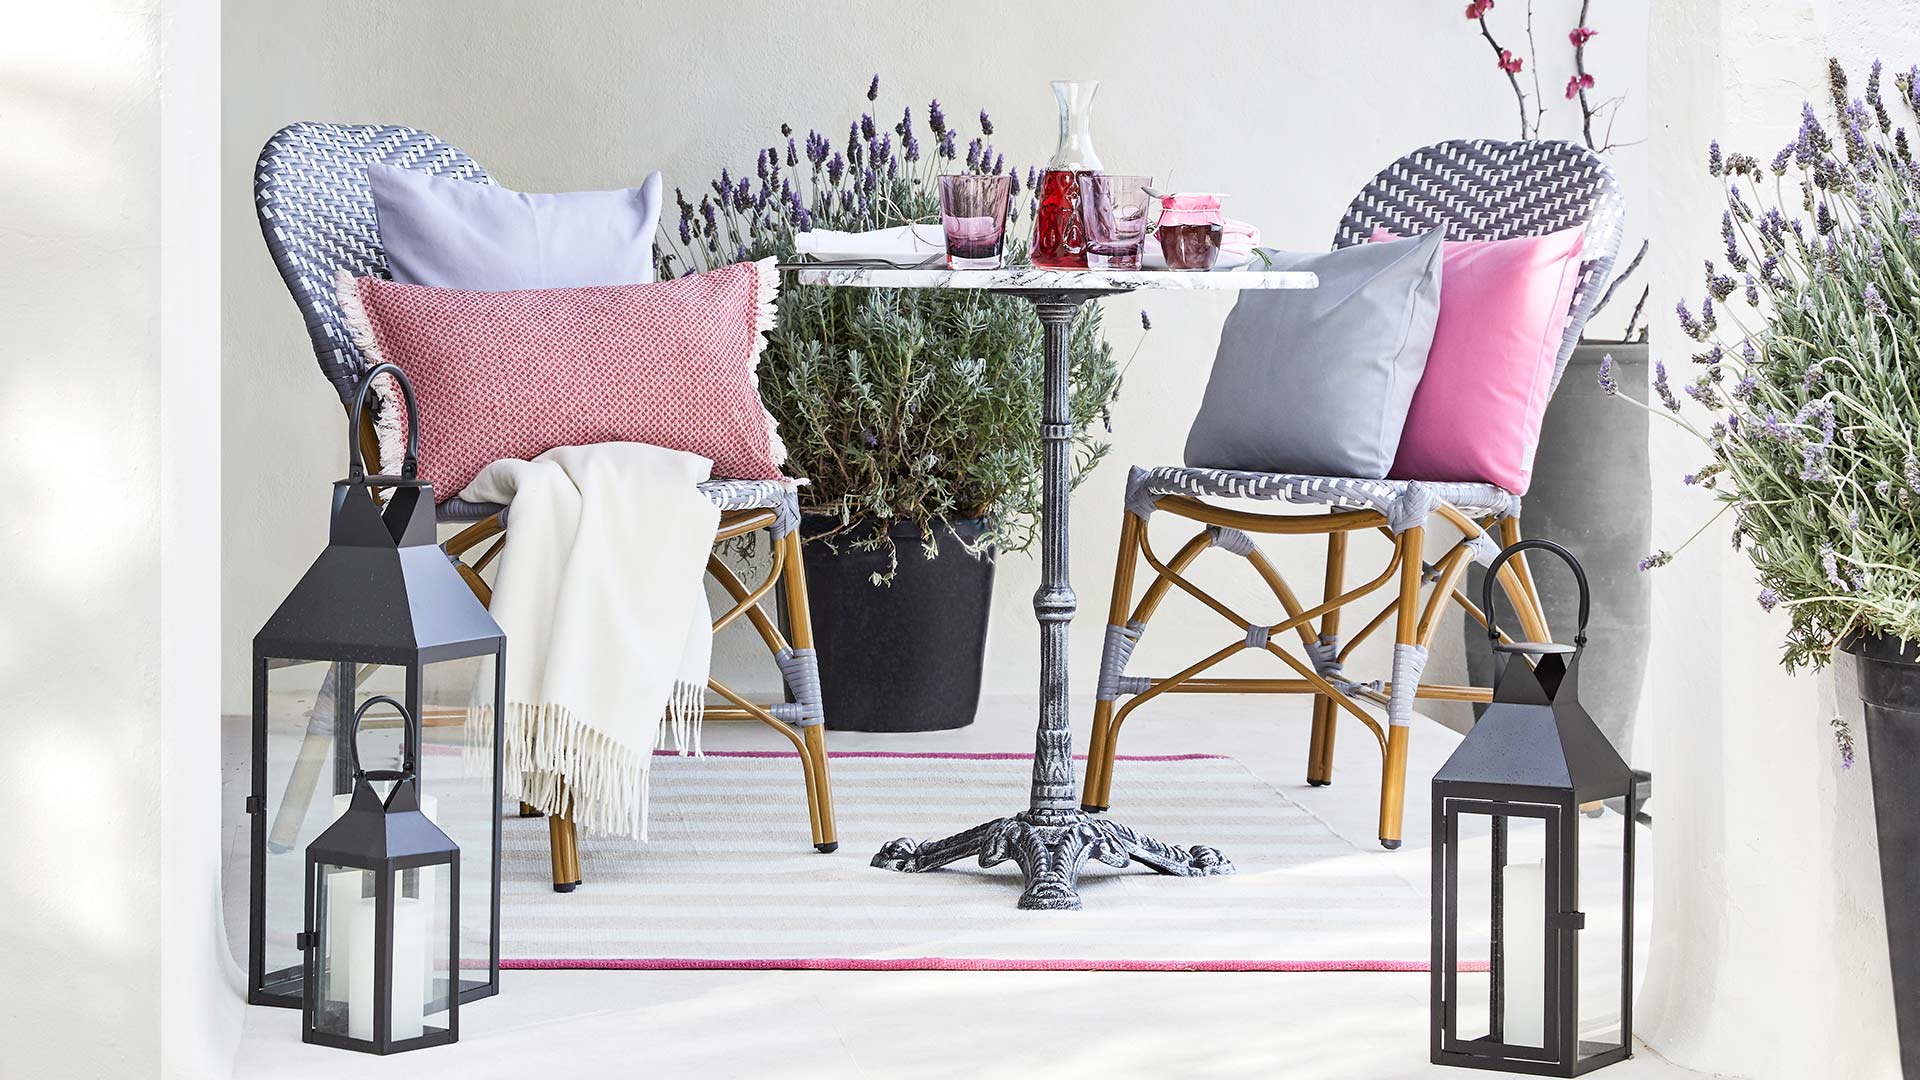 French Bistro 浅灰色背景有灰色和枚红色抱枕装饰的藤编织椅子阳台家具